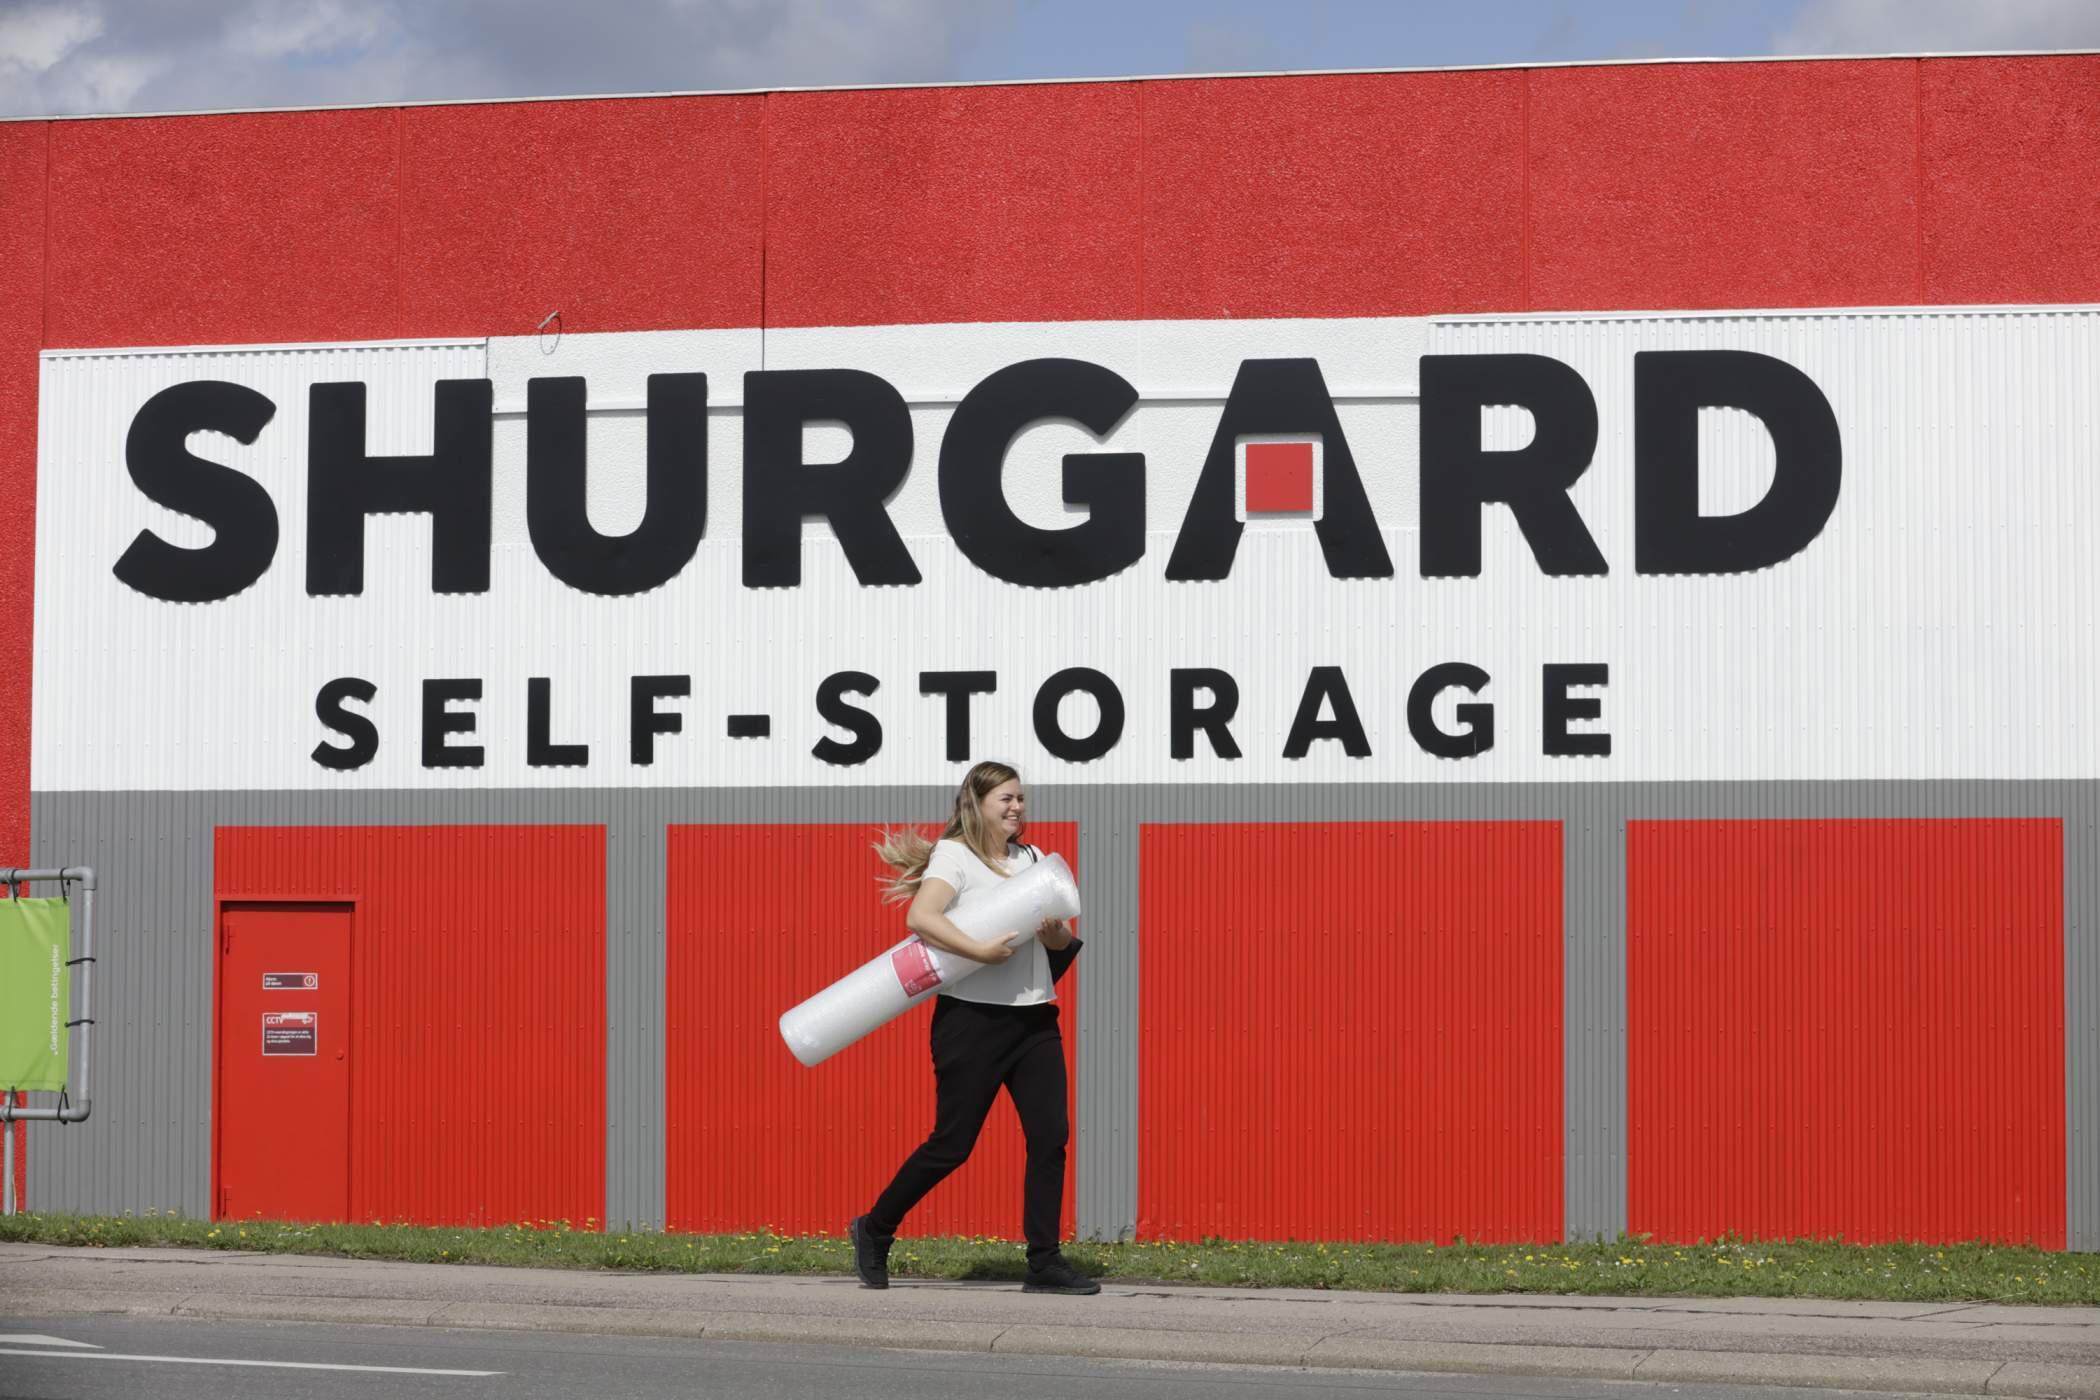 Shurgard Self Storage Ishøj Oplagringsvirksomhed, pakhusvirksomhed, Ishøj - 19